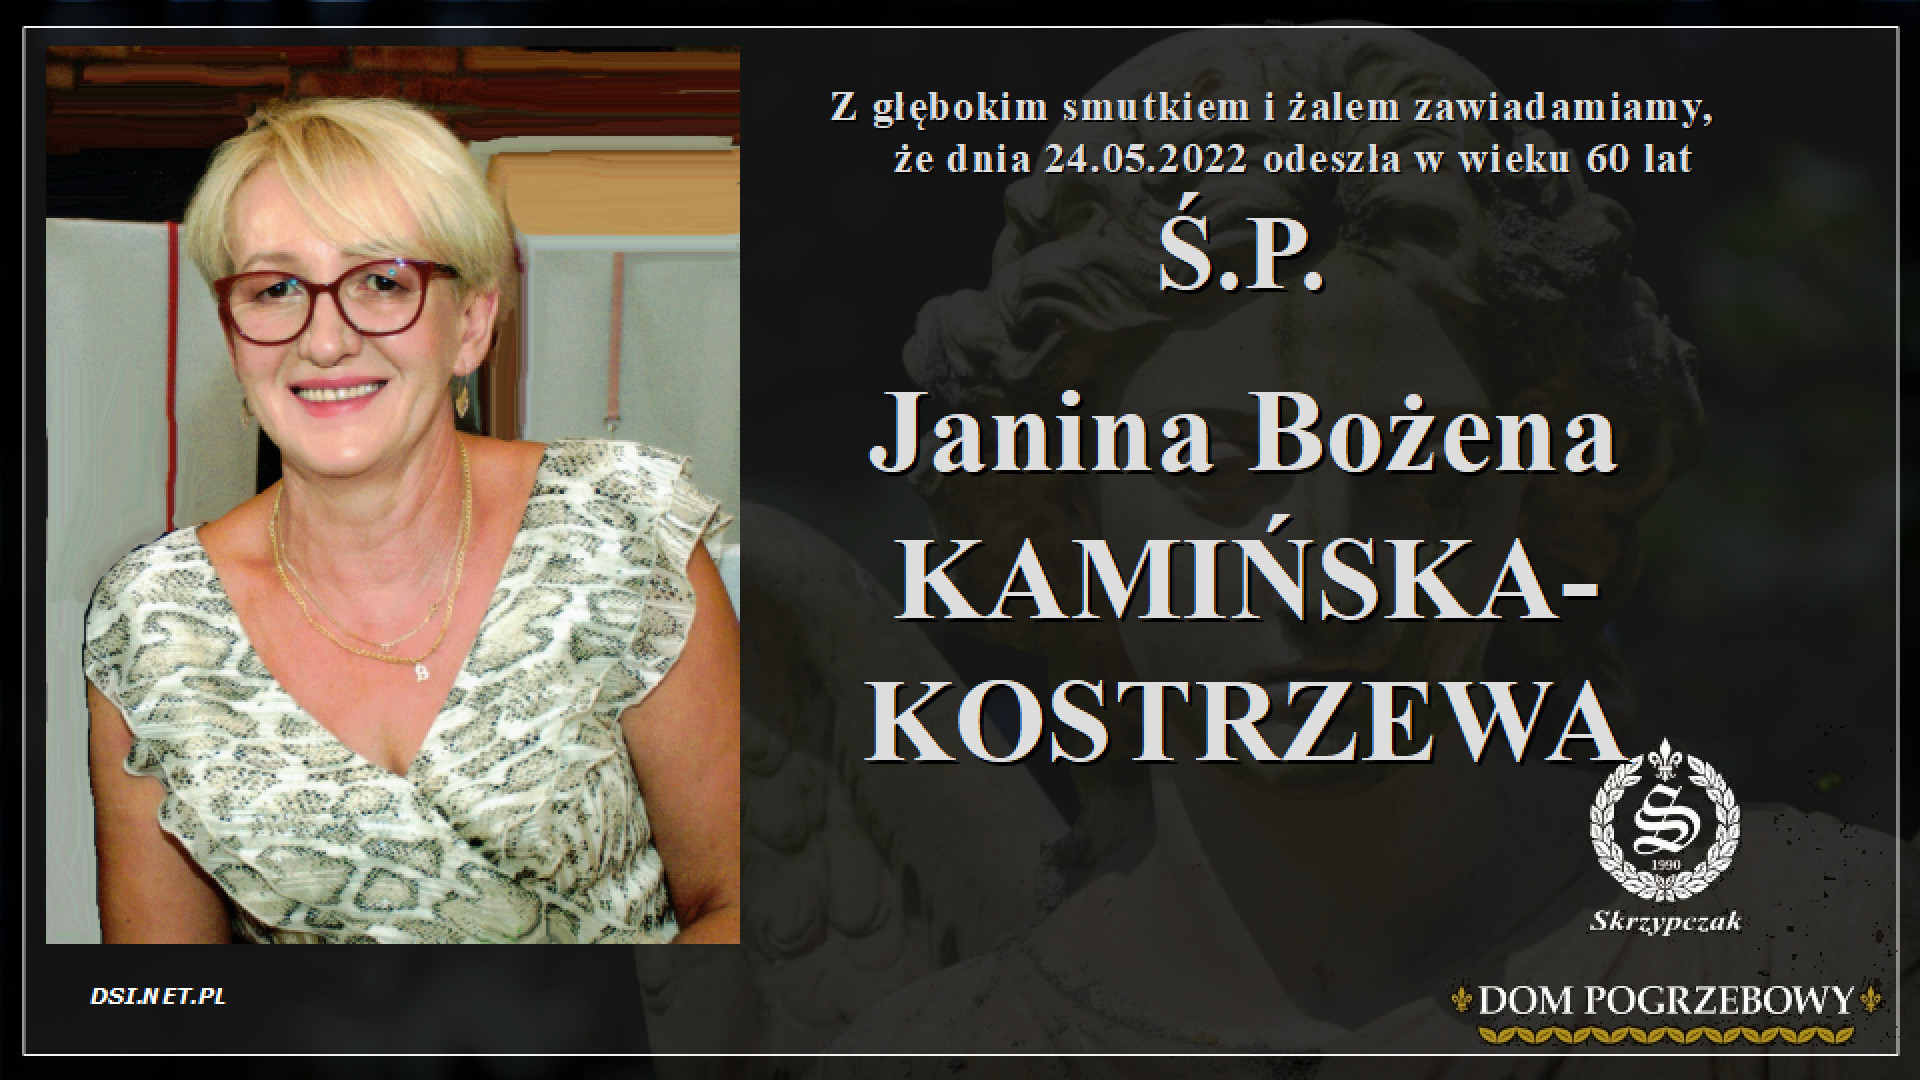 Janina Bożena Kamińska-Kostrzewa